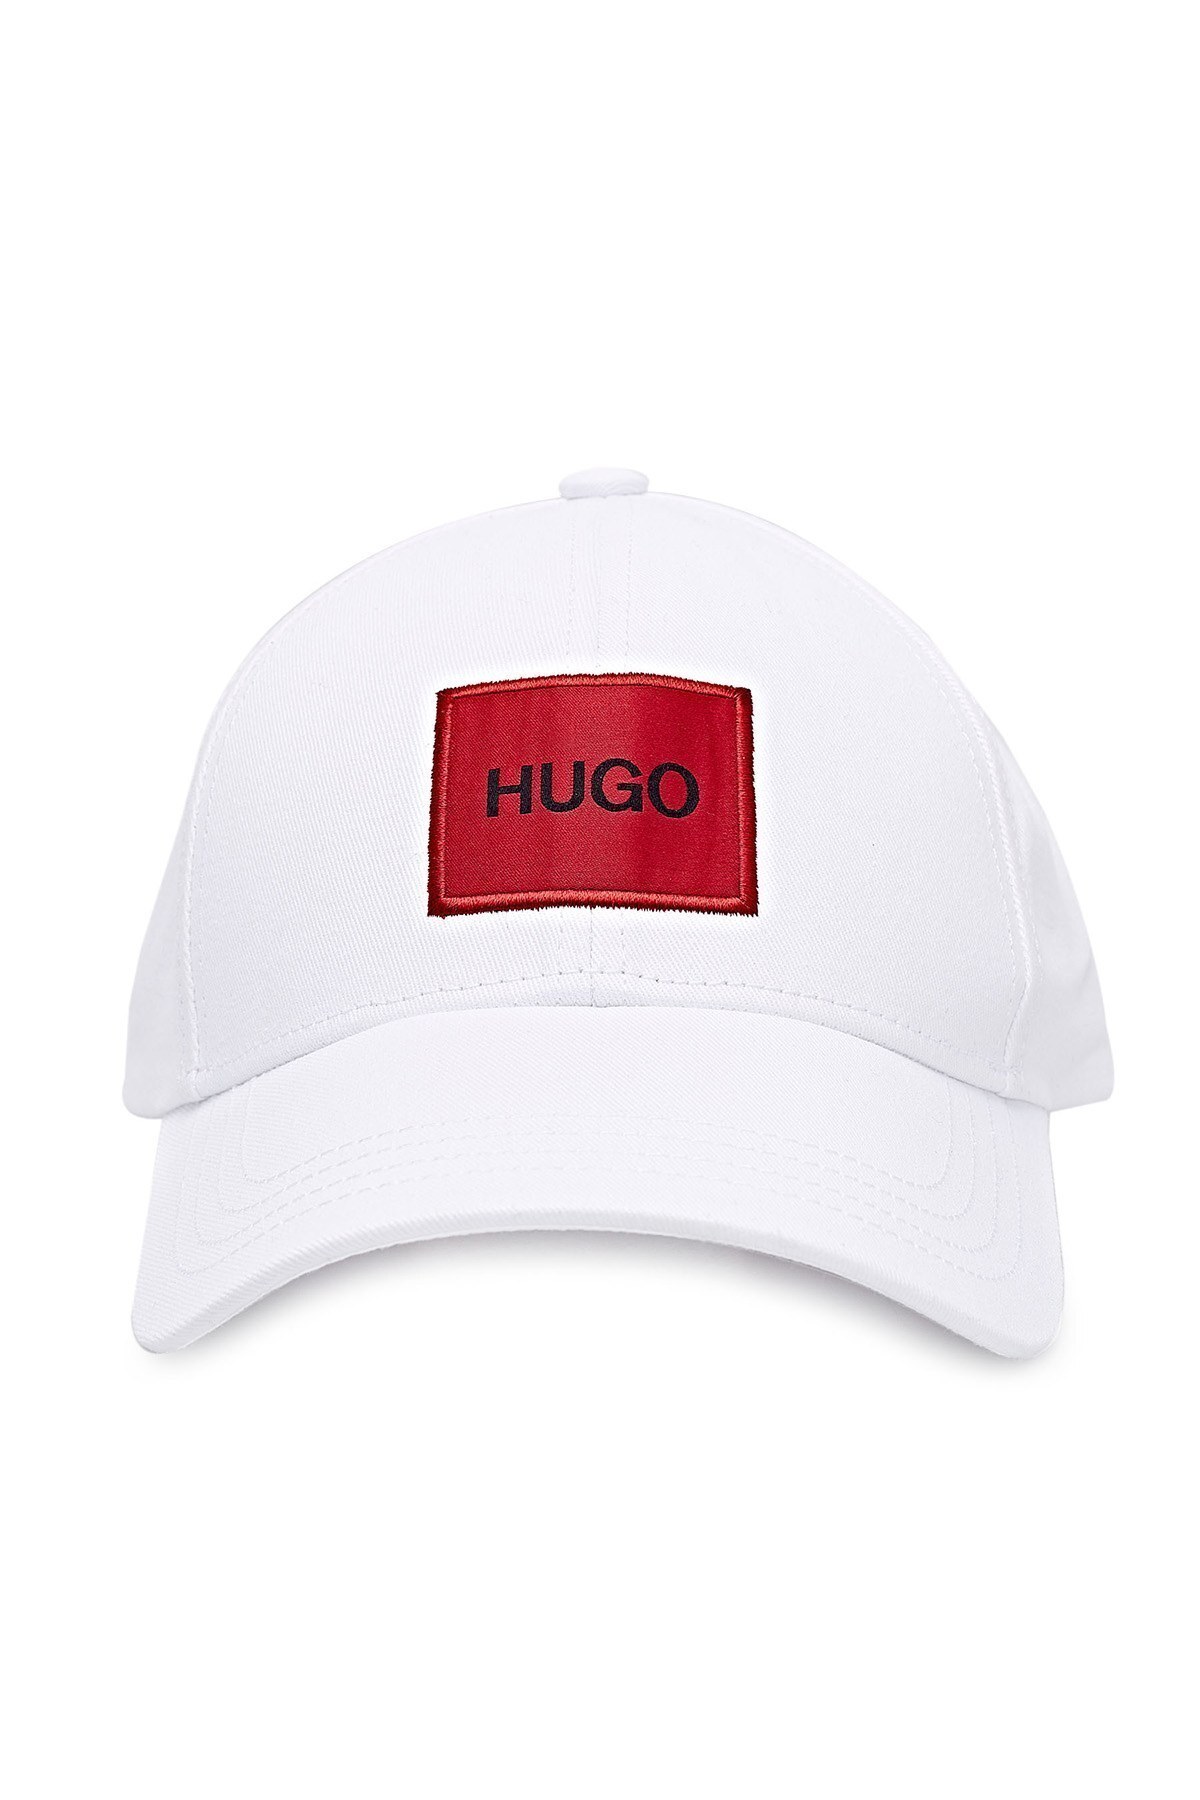 Hugo Boss Baskılı % 100 Pamuk Erkek Şapka 50449455 100 BEYAZ